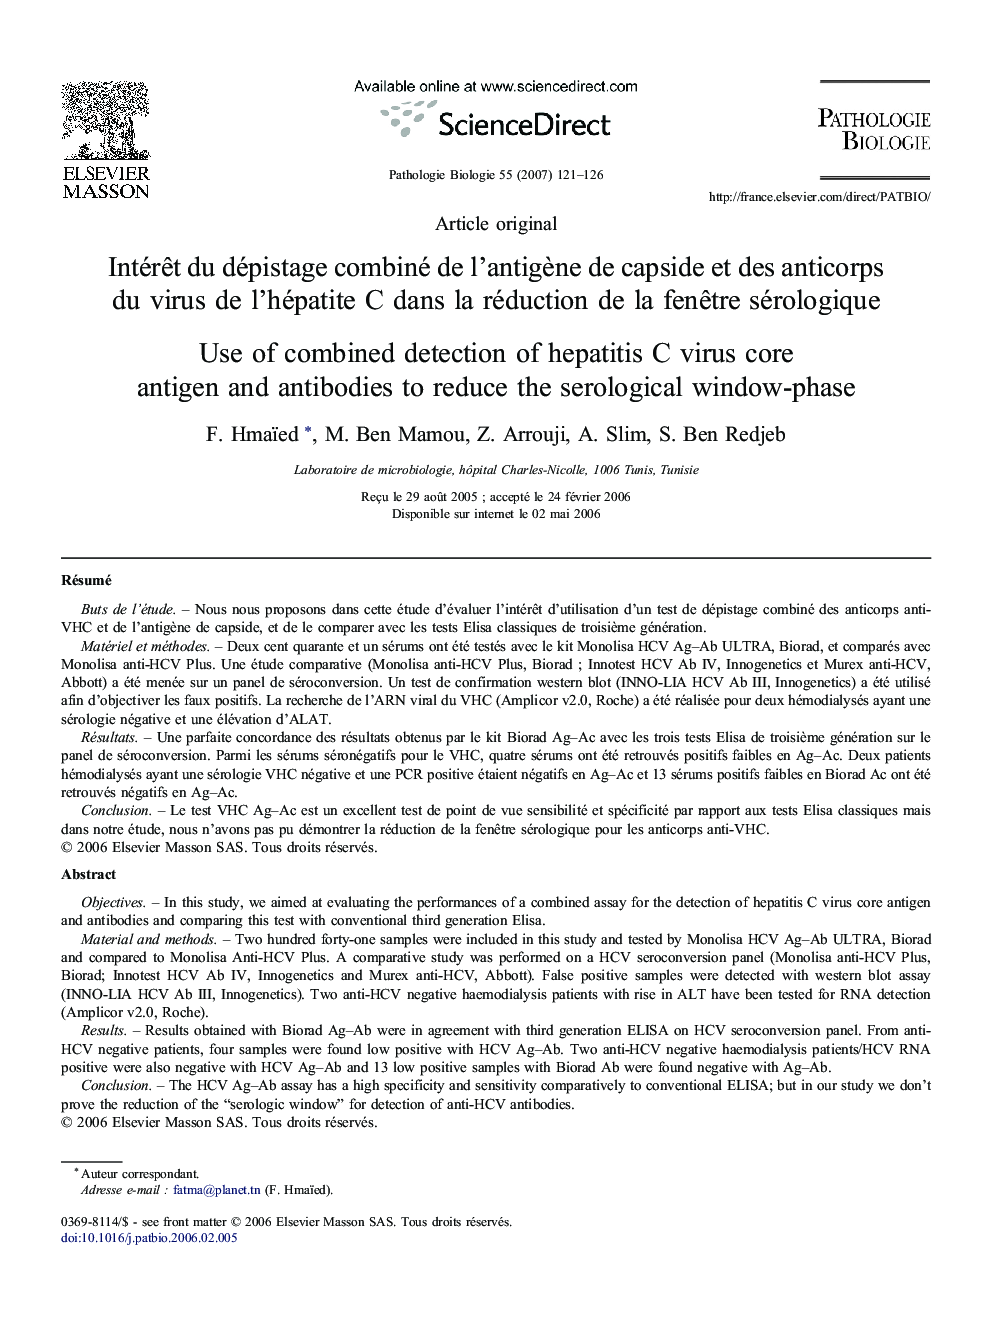 Intérêt du dépistage combiné de l'antigène de capside et des anticorps du virus de l'hépatite C dans la réduction de la fenêtre sérologique